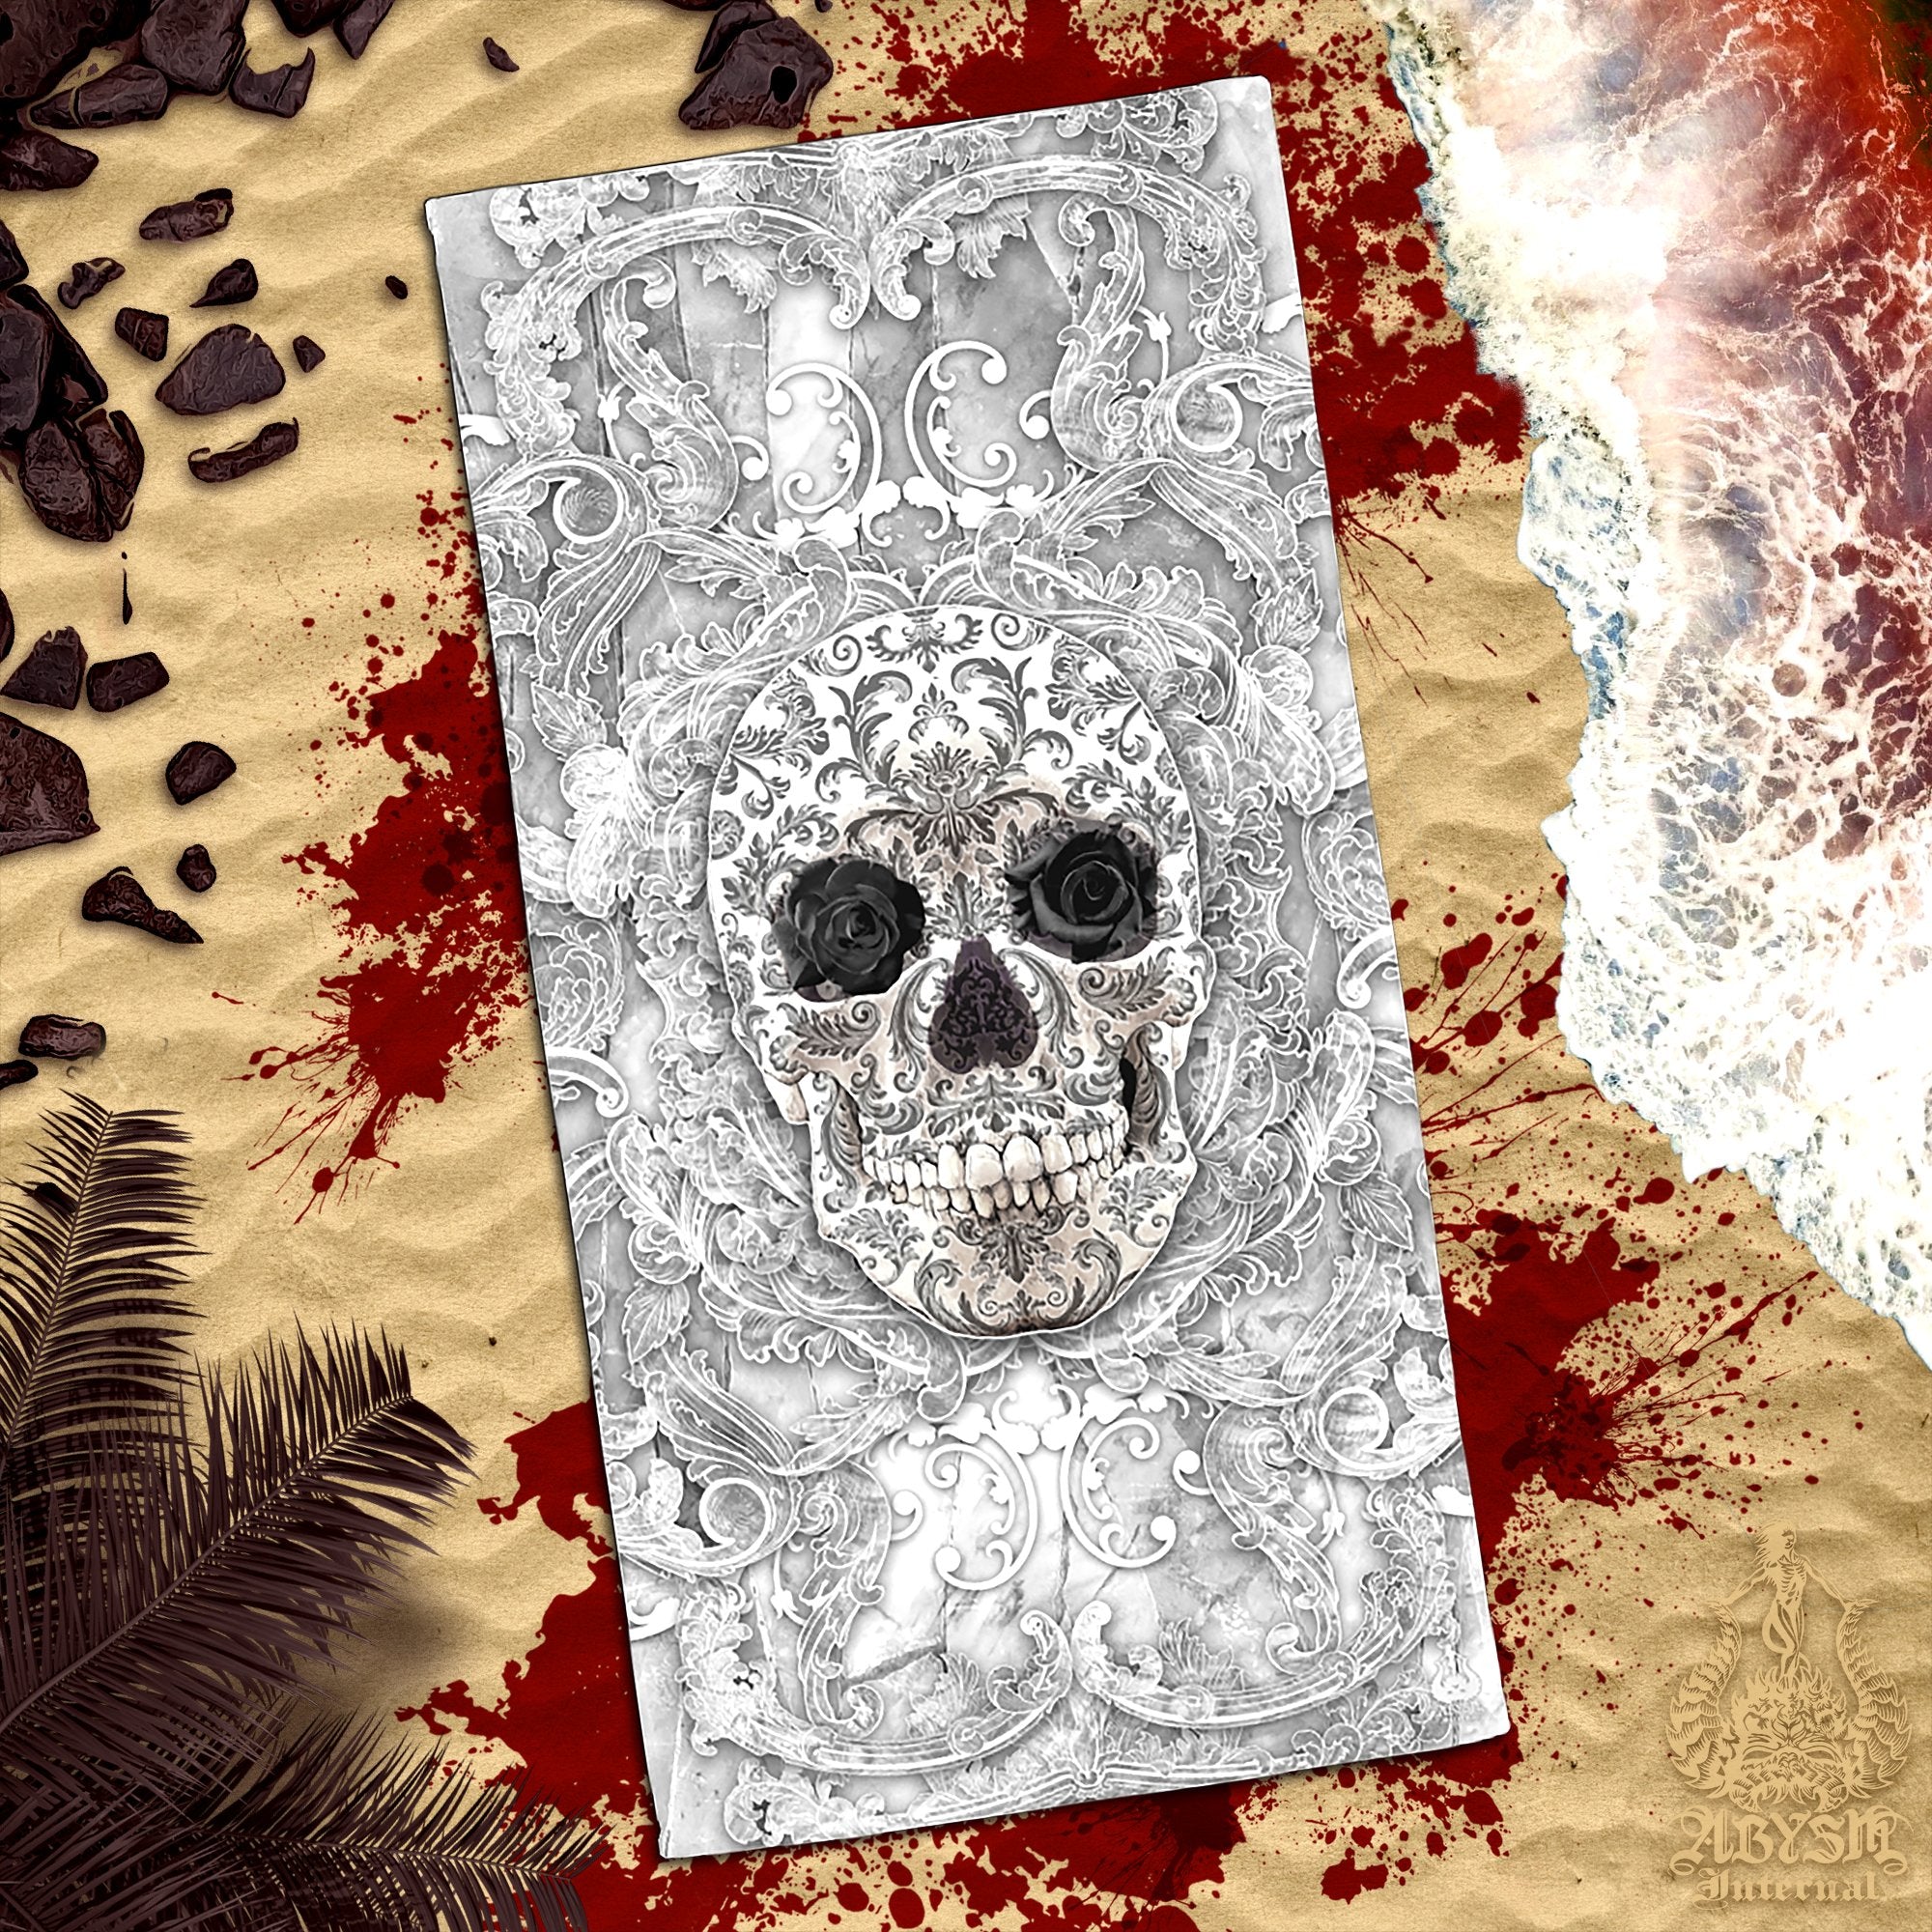 ALL Skull Beach Towel, Macabre Art, Sugar Skull, Day of the Dead, Dia de los Muertos - 14 Colors - Abysm Internal